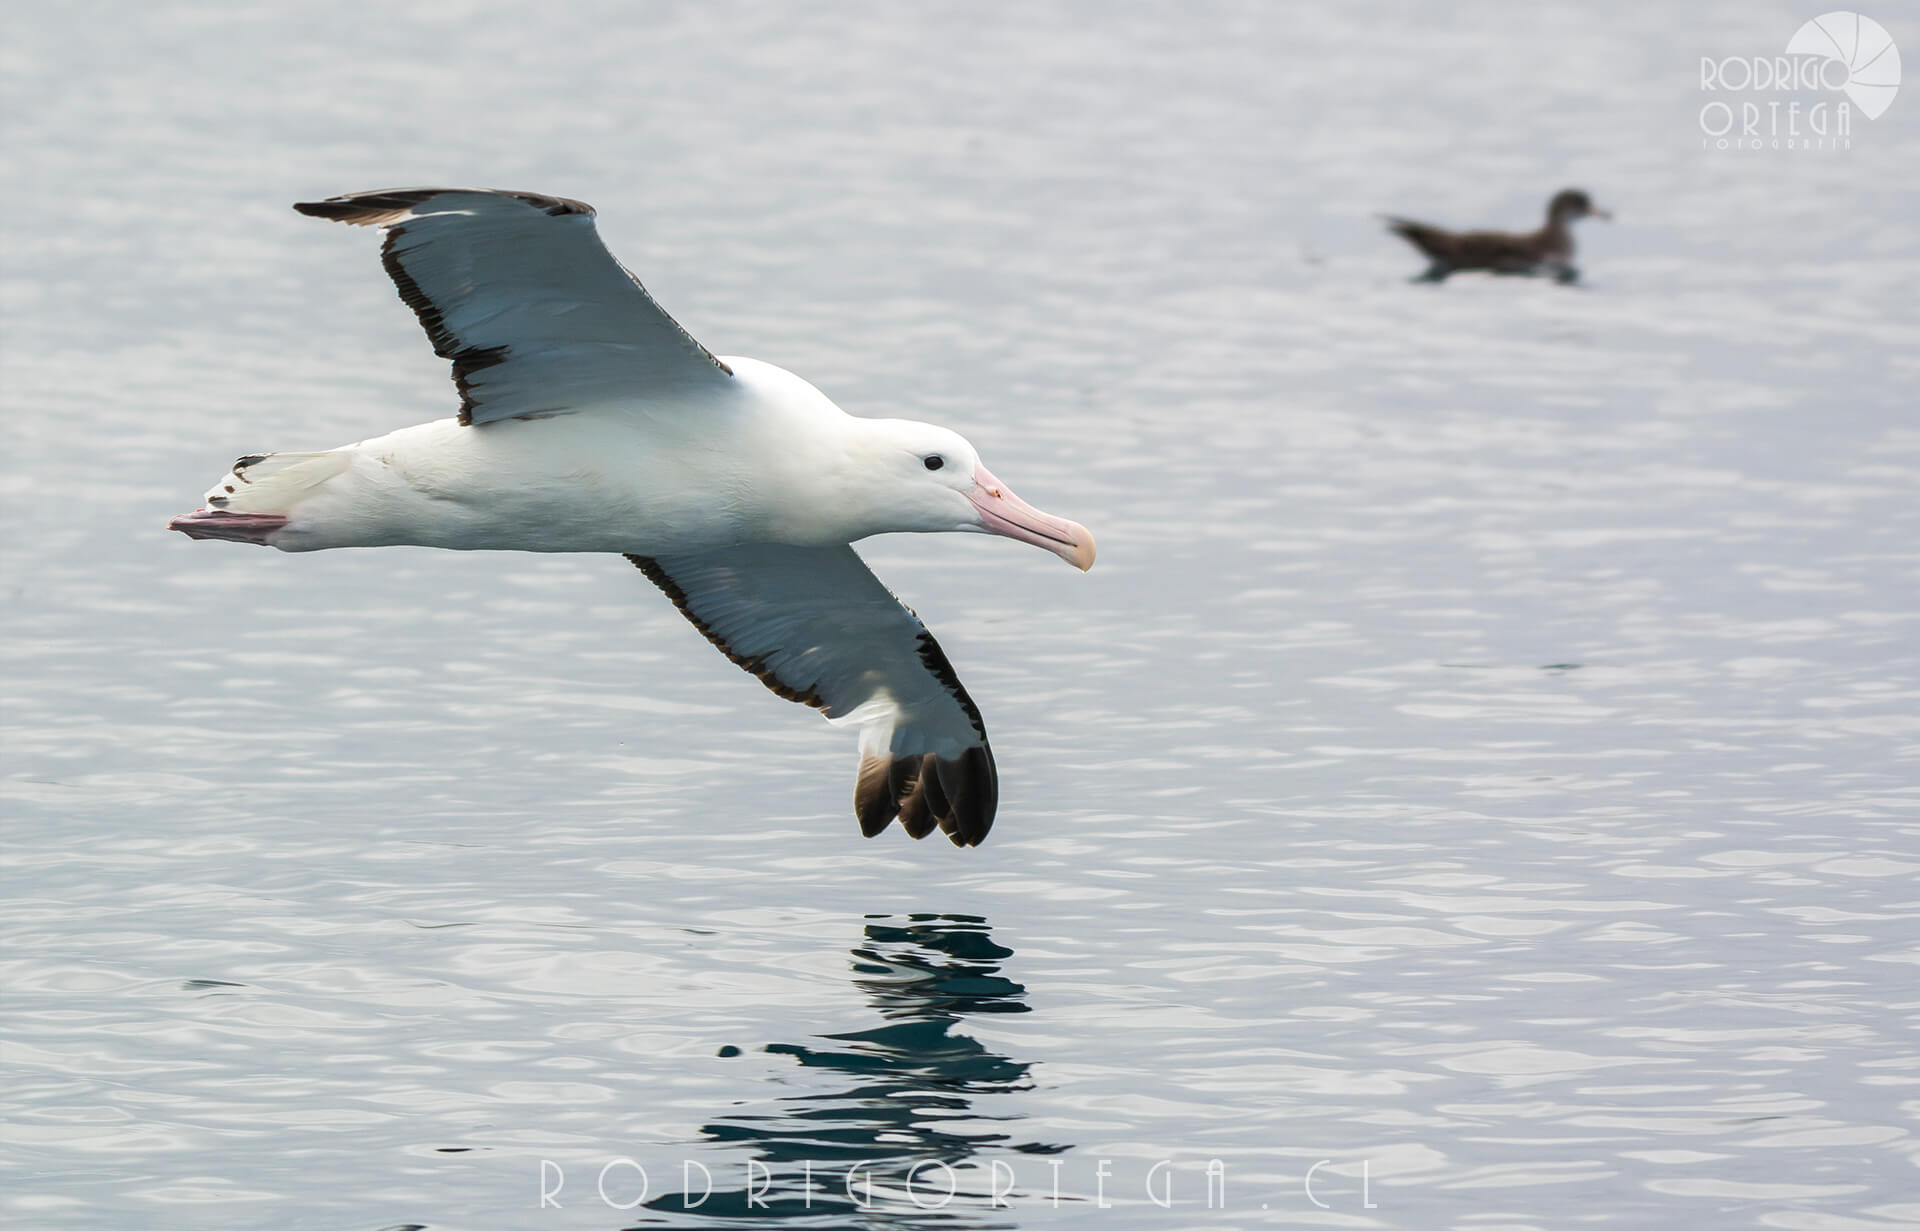 Albatros real del norte 3 Rodrigo Ortega - Naturaleza & Outdoor Albatros real del norte 3